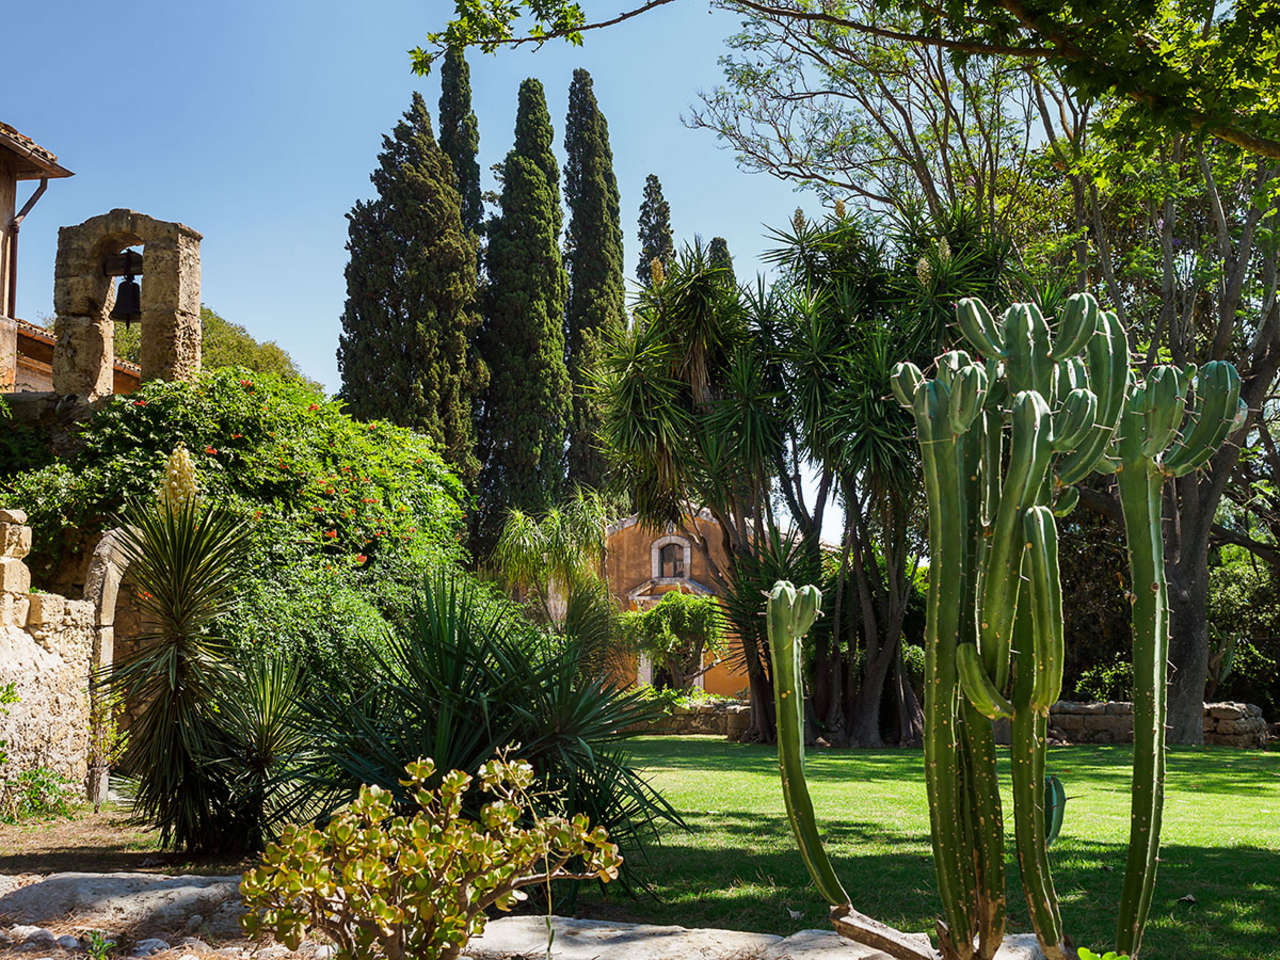 Θα αναστήσουν οι βοτανικοί κήποι τον ιταλικό τουρισμό;